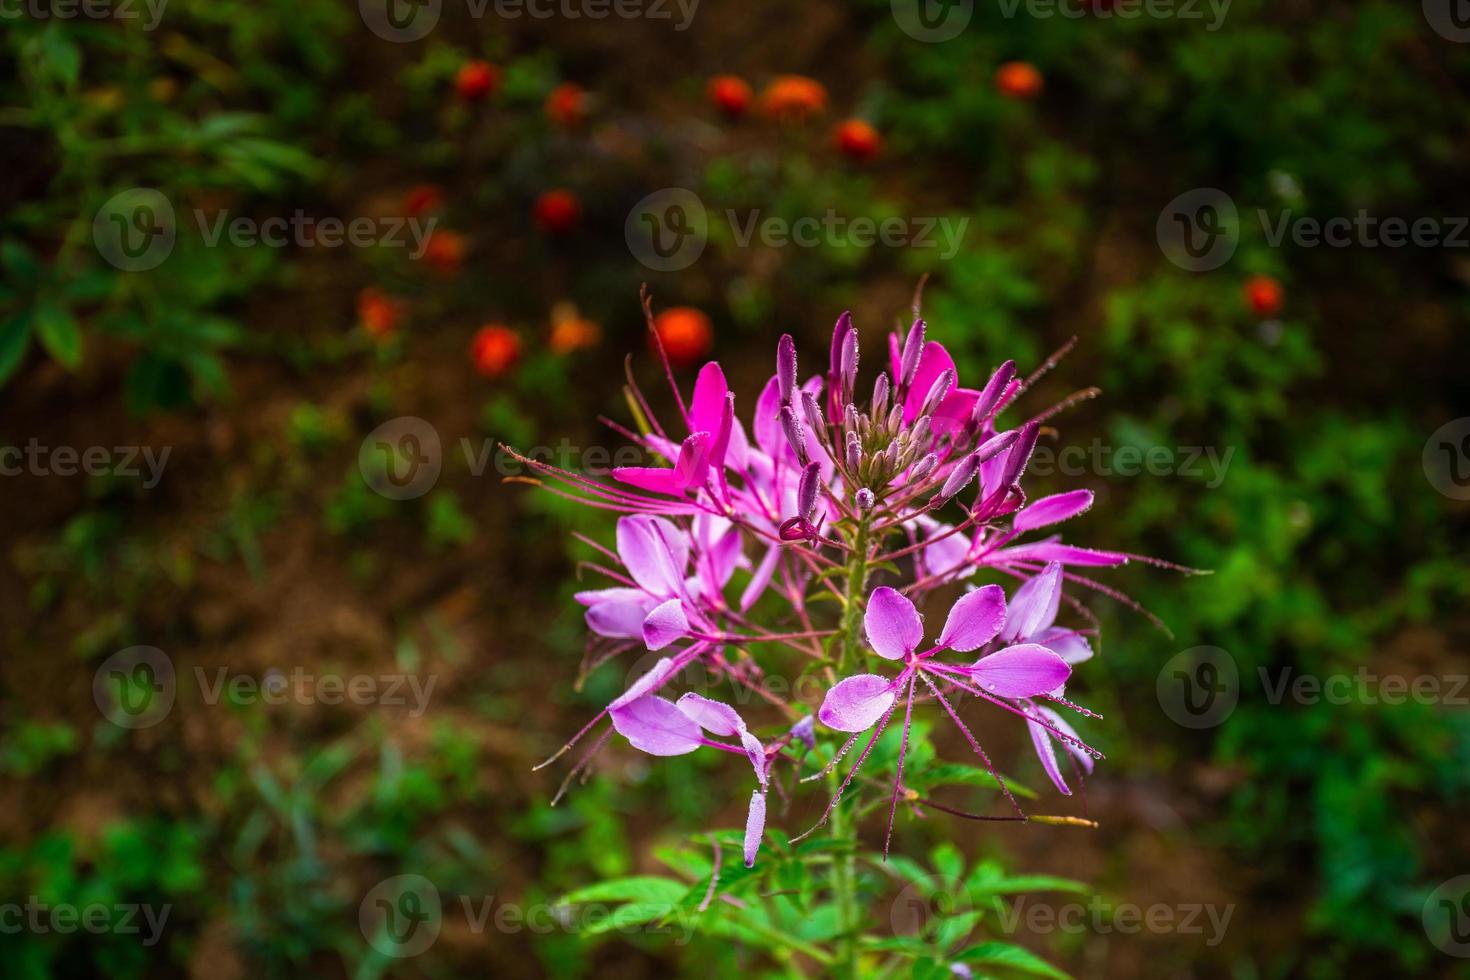 cleome hassleriana, comunemente nota come fiore di ragno, pianta di ragno, regina rosa o baffi del nonno, originaria del sud america foto